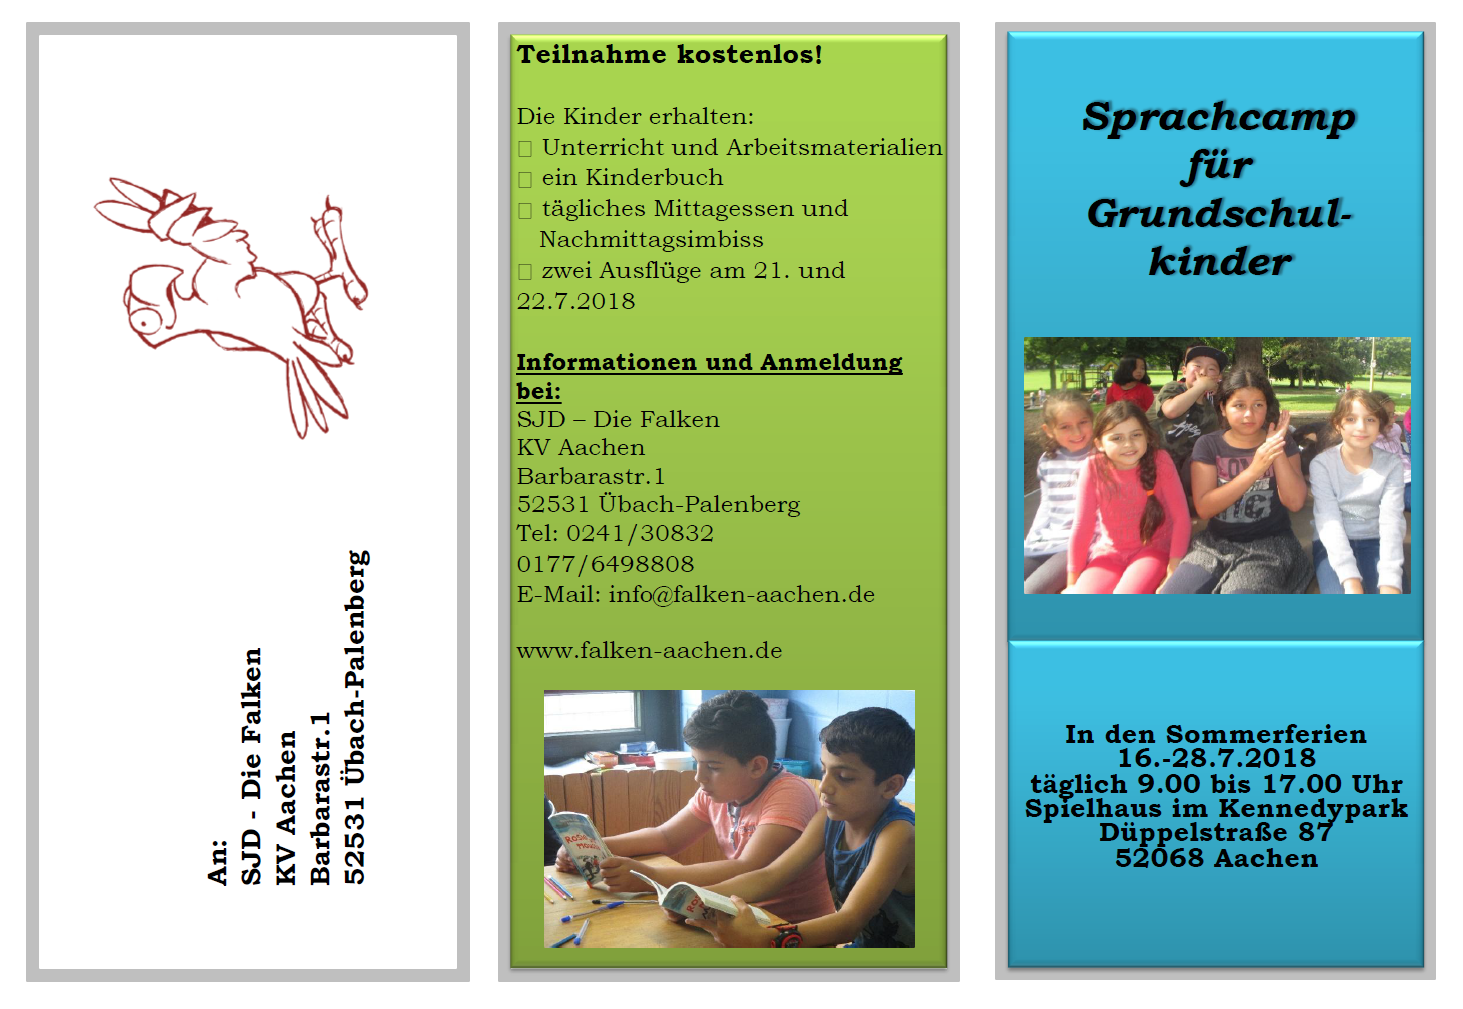 Sprachcamp in Aachen